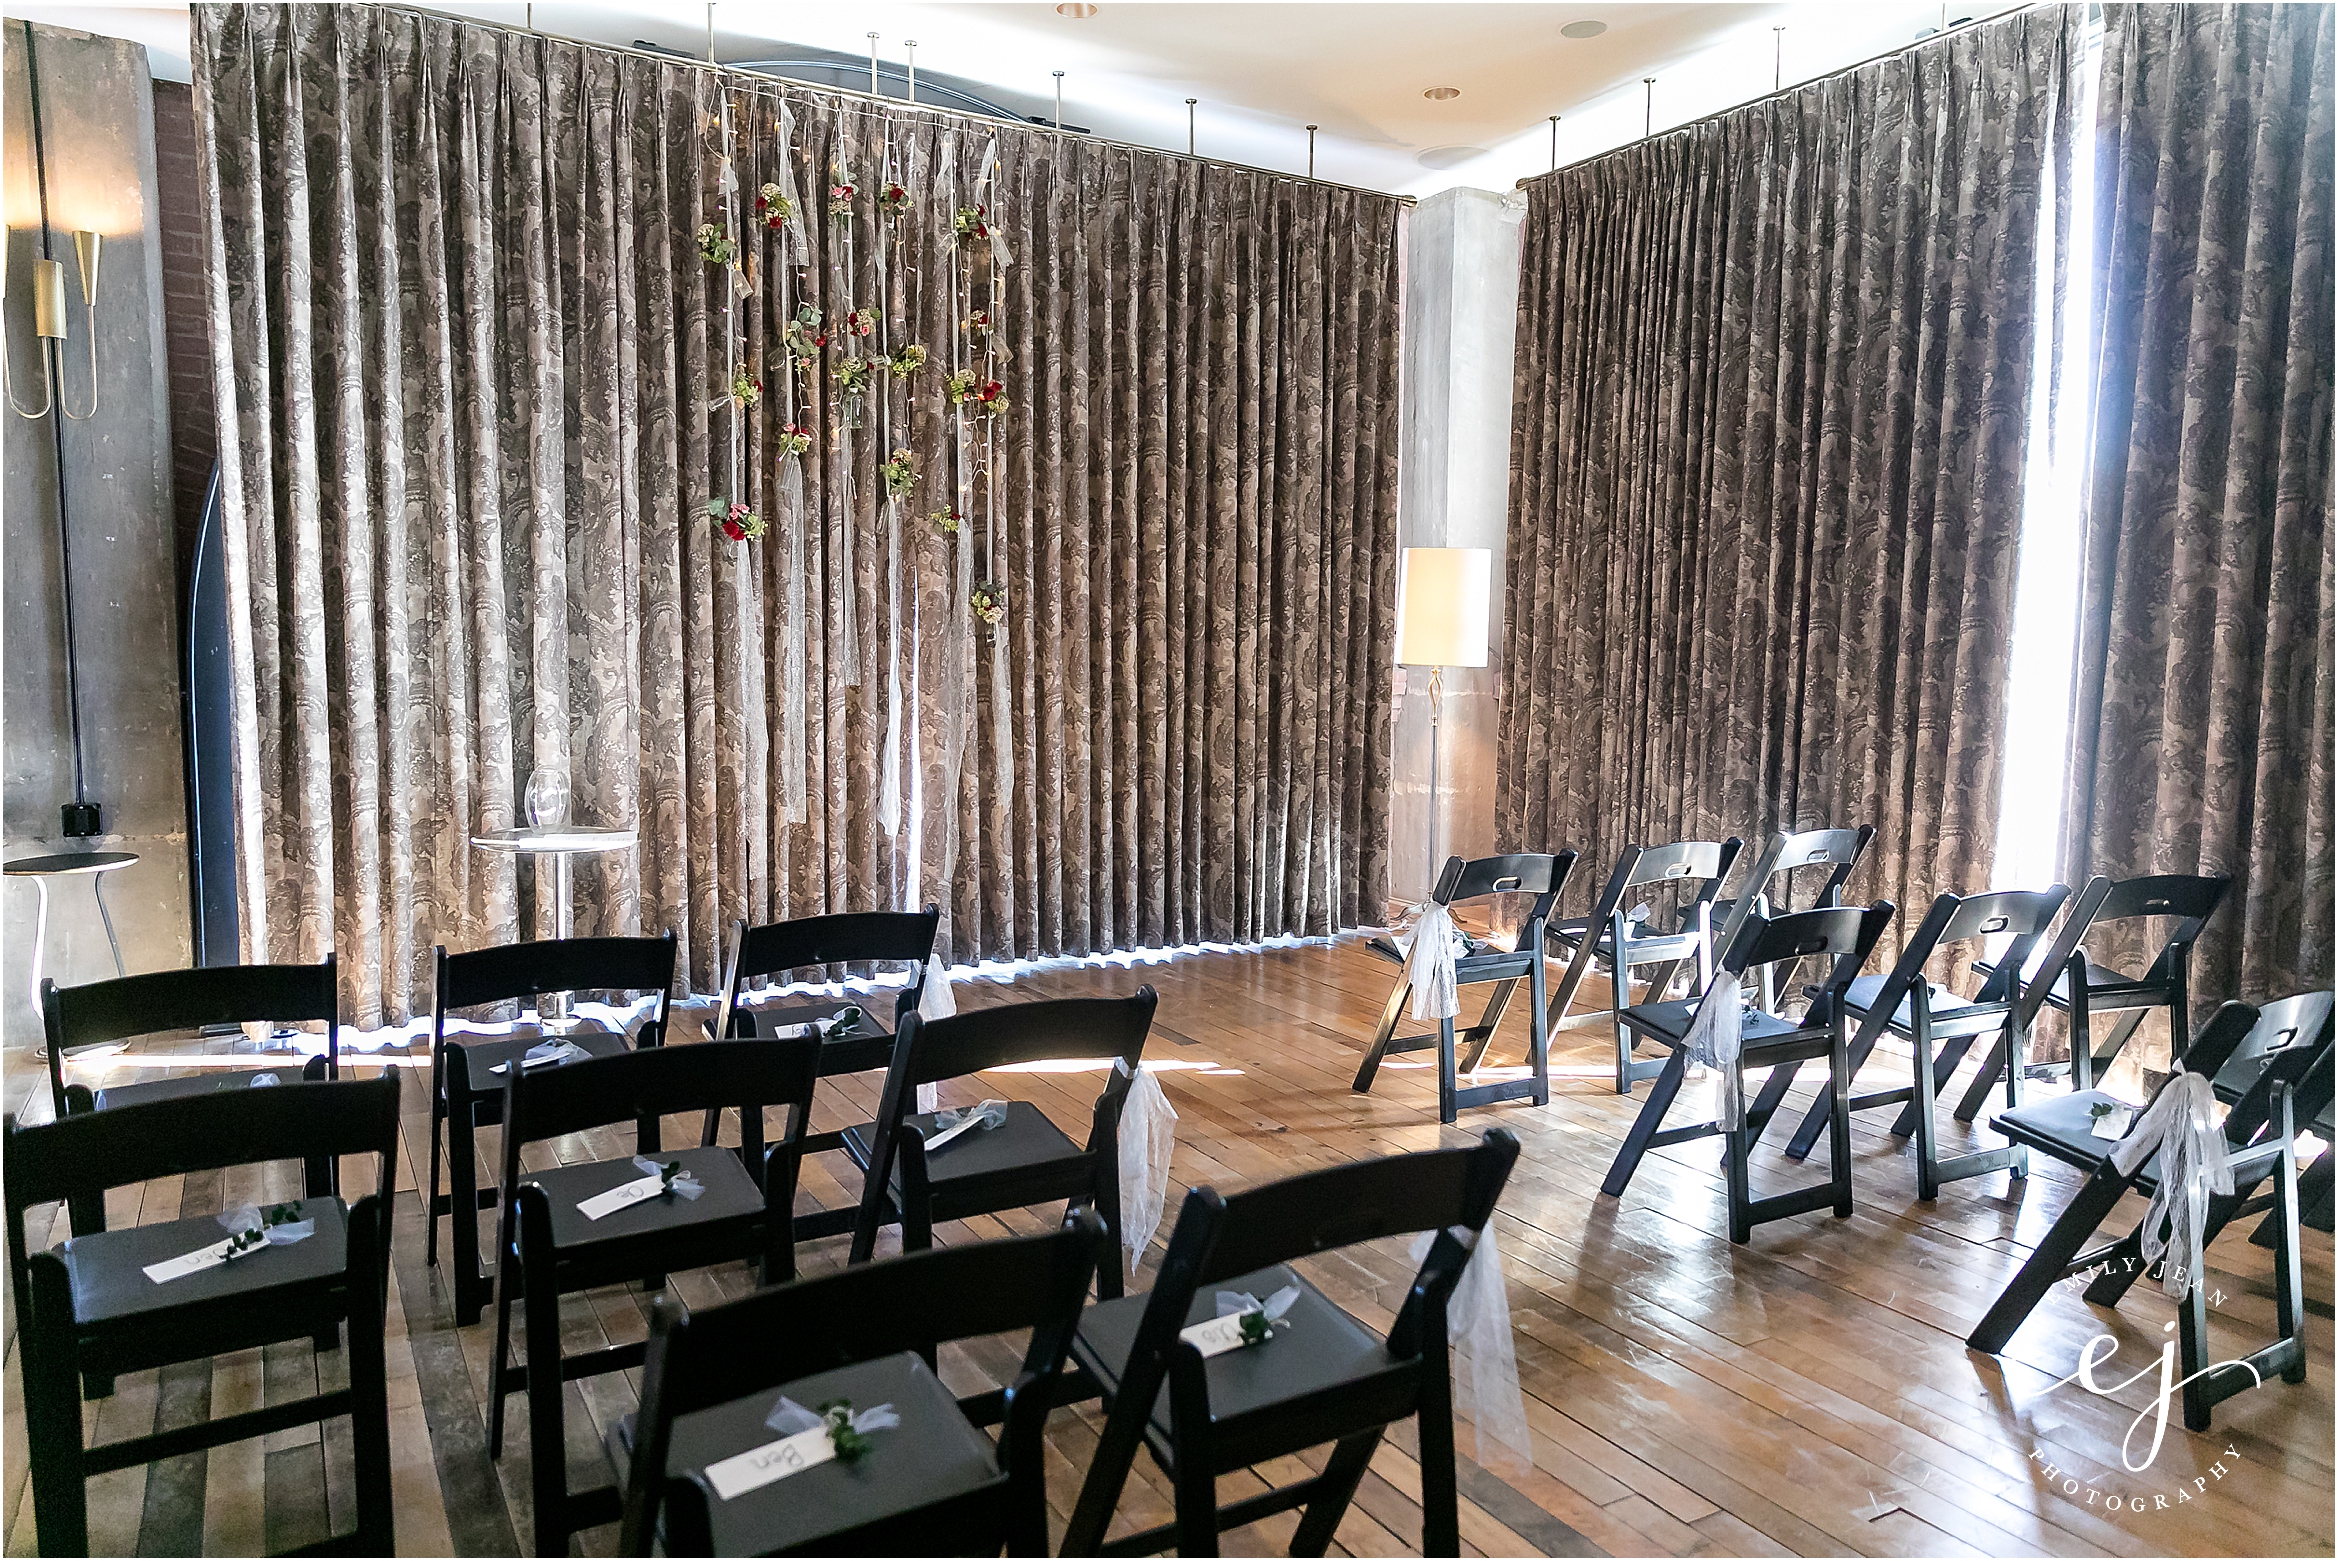 indoor wedding design with black chairs